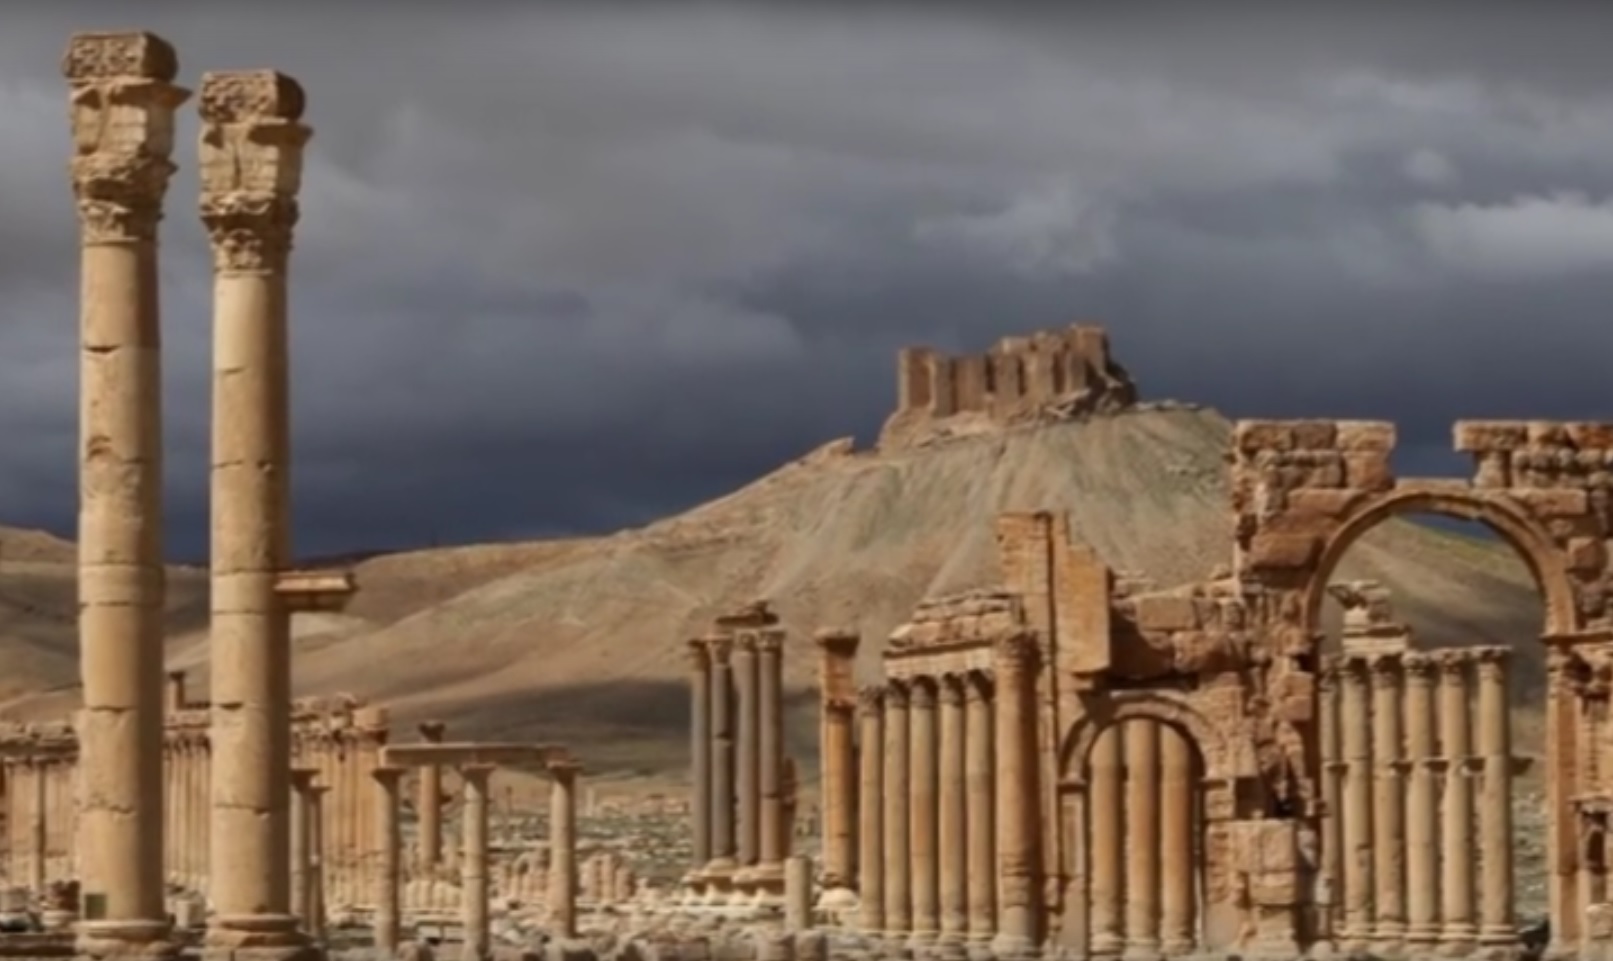 PALMIRA NAKON OSLOBOĐENJA: Obnovit će se hramovi, svetišta i druge povijesne građevine